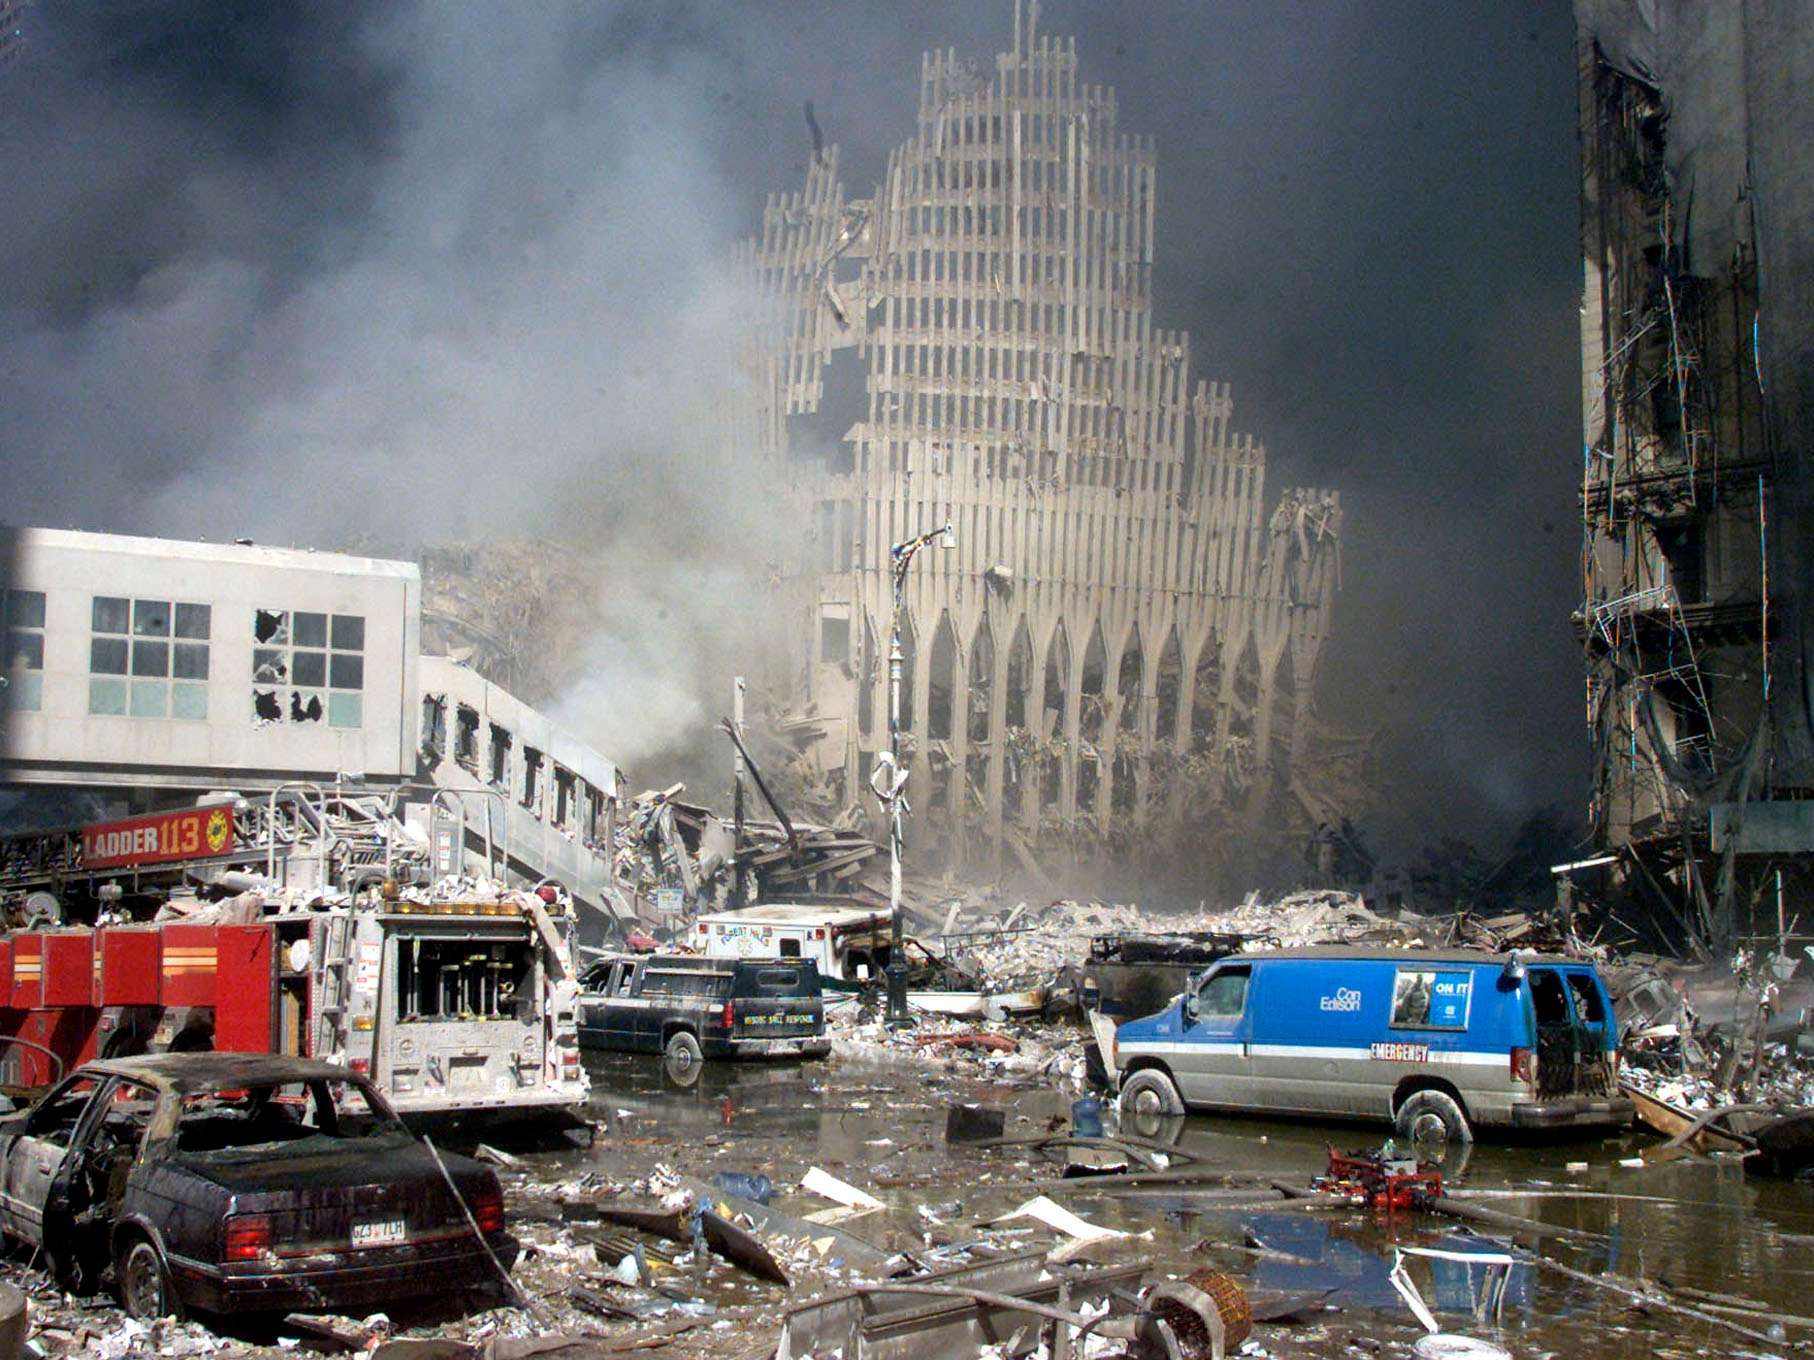 Теракт в 2001 году 11 сентября. ВТЦ Нью-Йорк 2001. Башни-Близнецы 11 сентября 2001. Башни ВТЦ 11 сентября 2001. Разрушенные башни Близнецы 11 сентября.